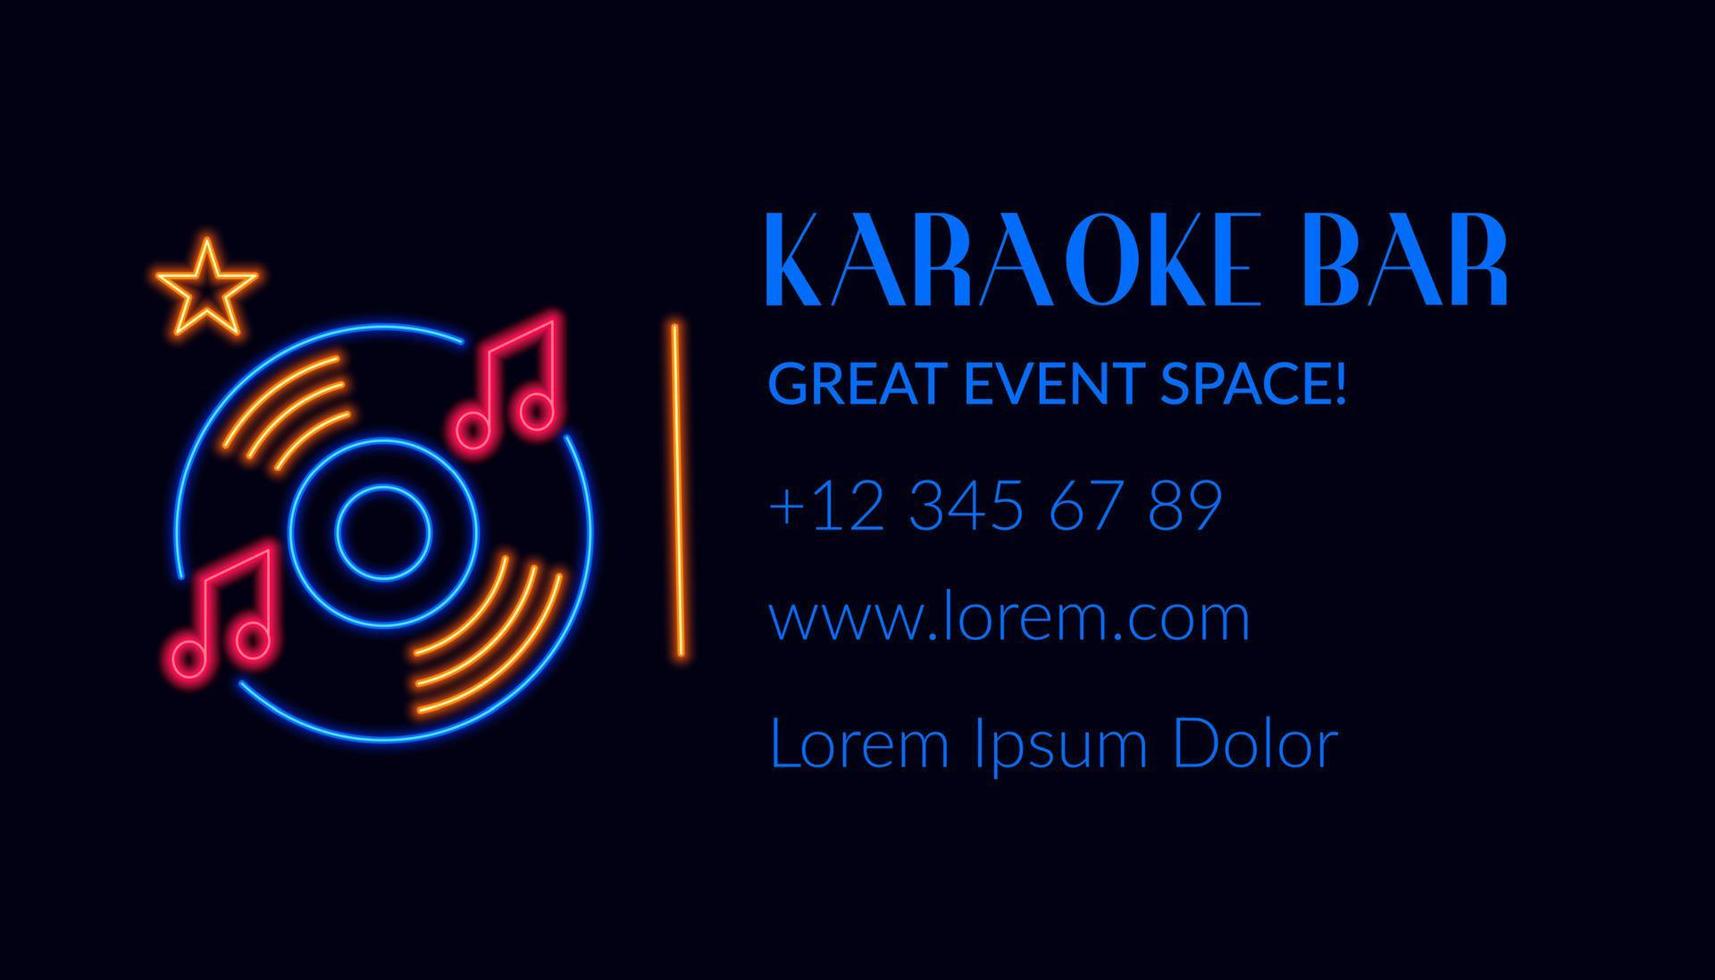 bar de karaoke, tarjeta de visita con logo e información vector